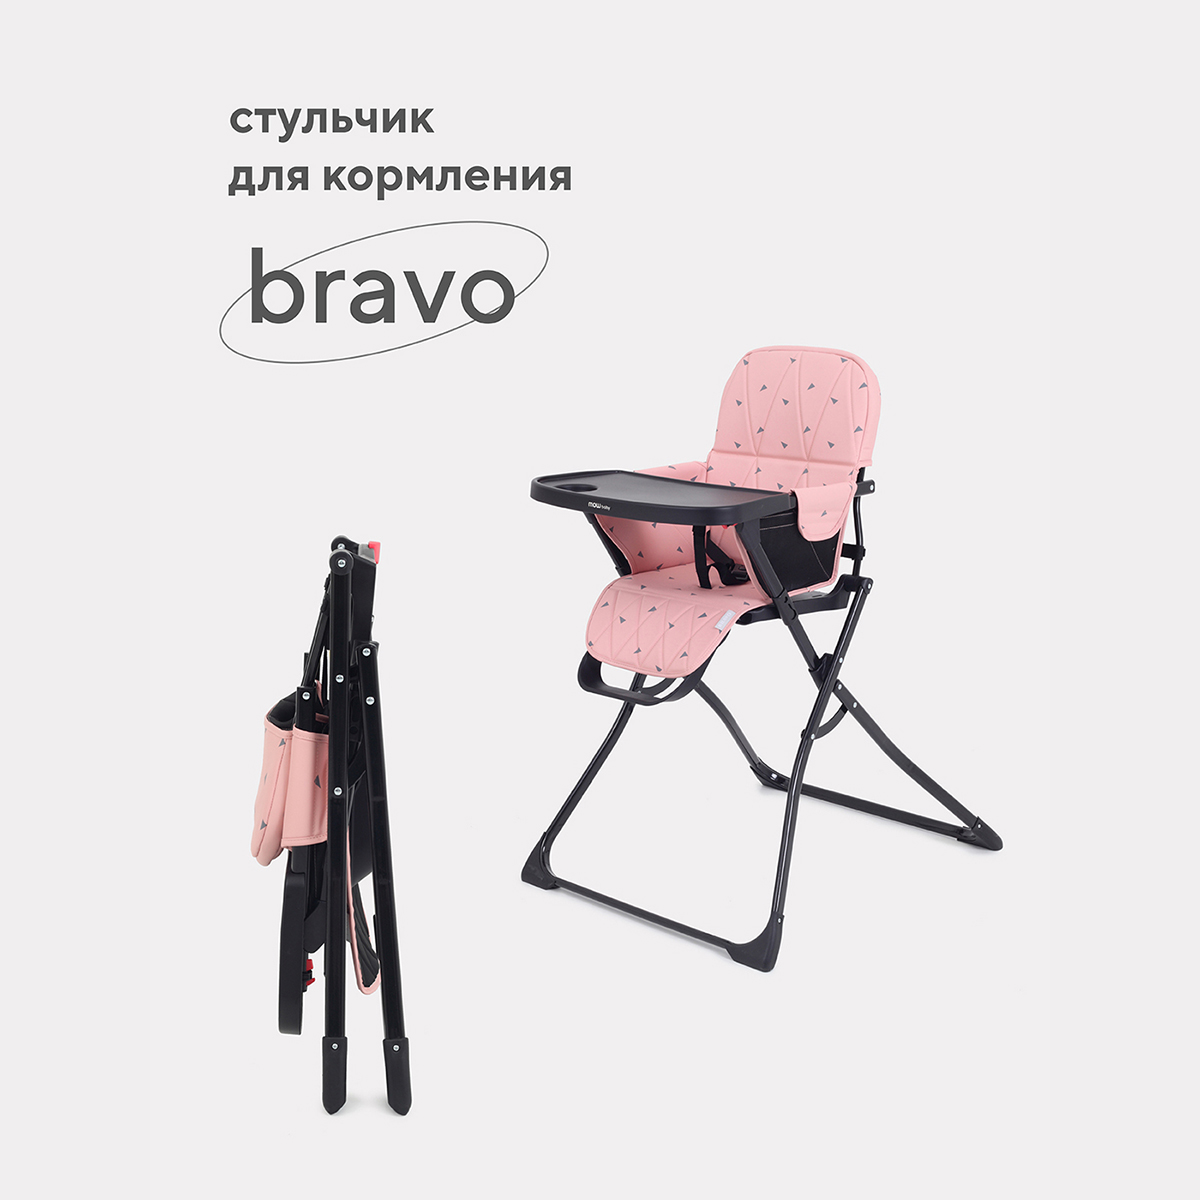 Стульчик для кормления Mowbaby Bravo RH510_cloud pink стульчик для кормления mowbaby bravo rh510 desert beige